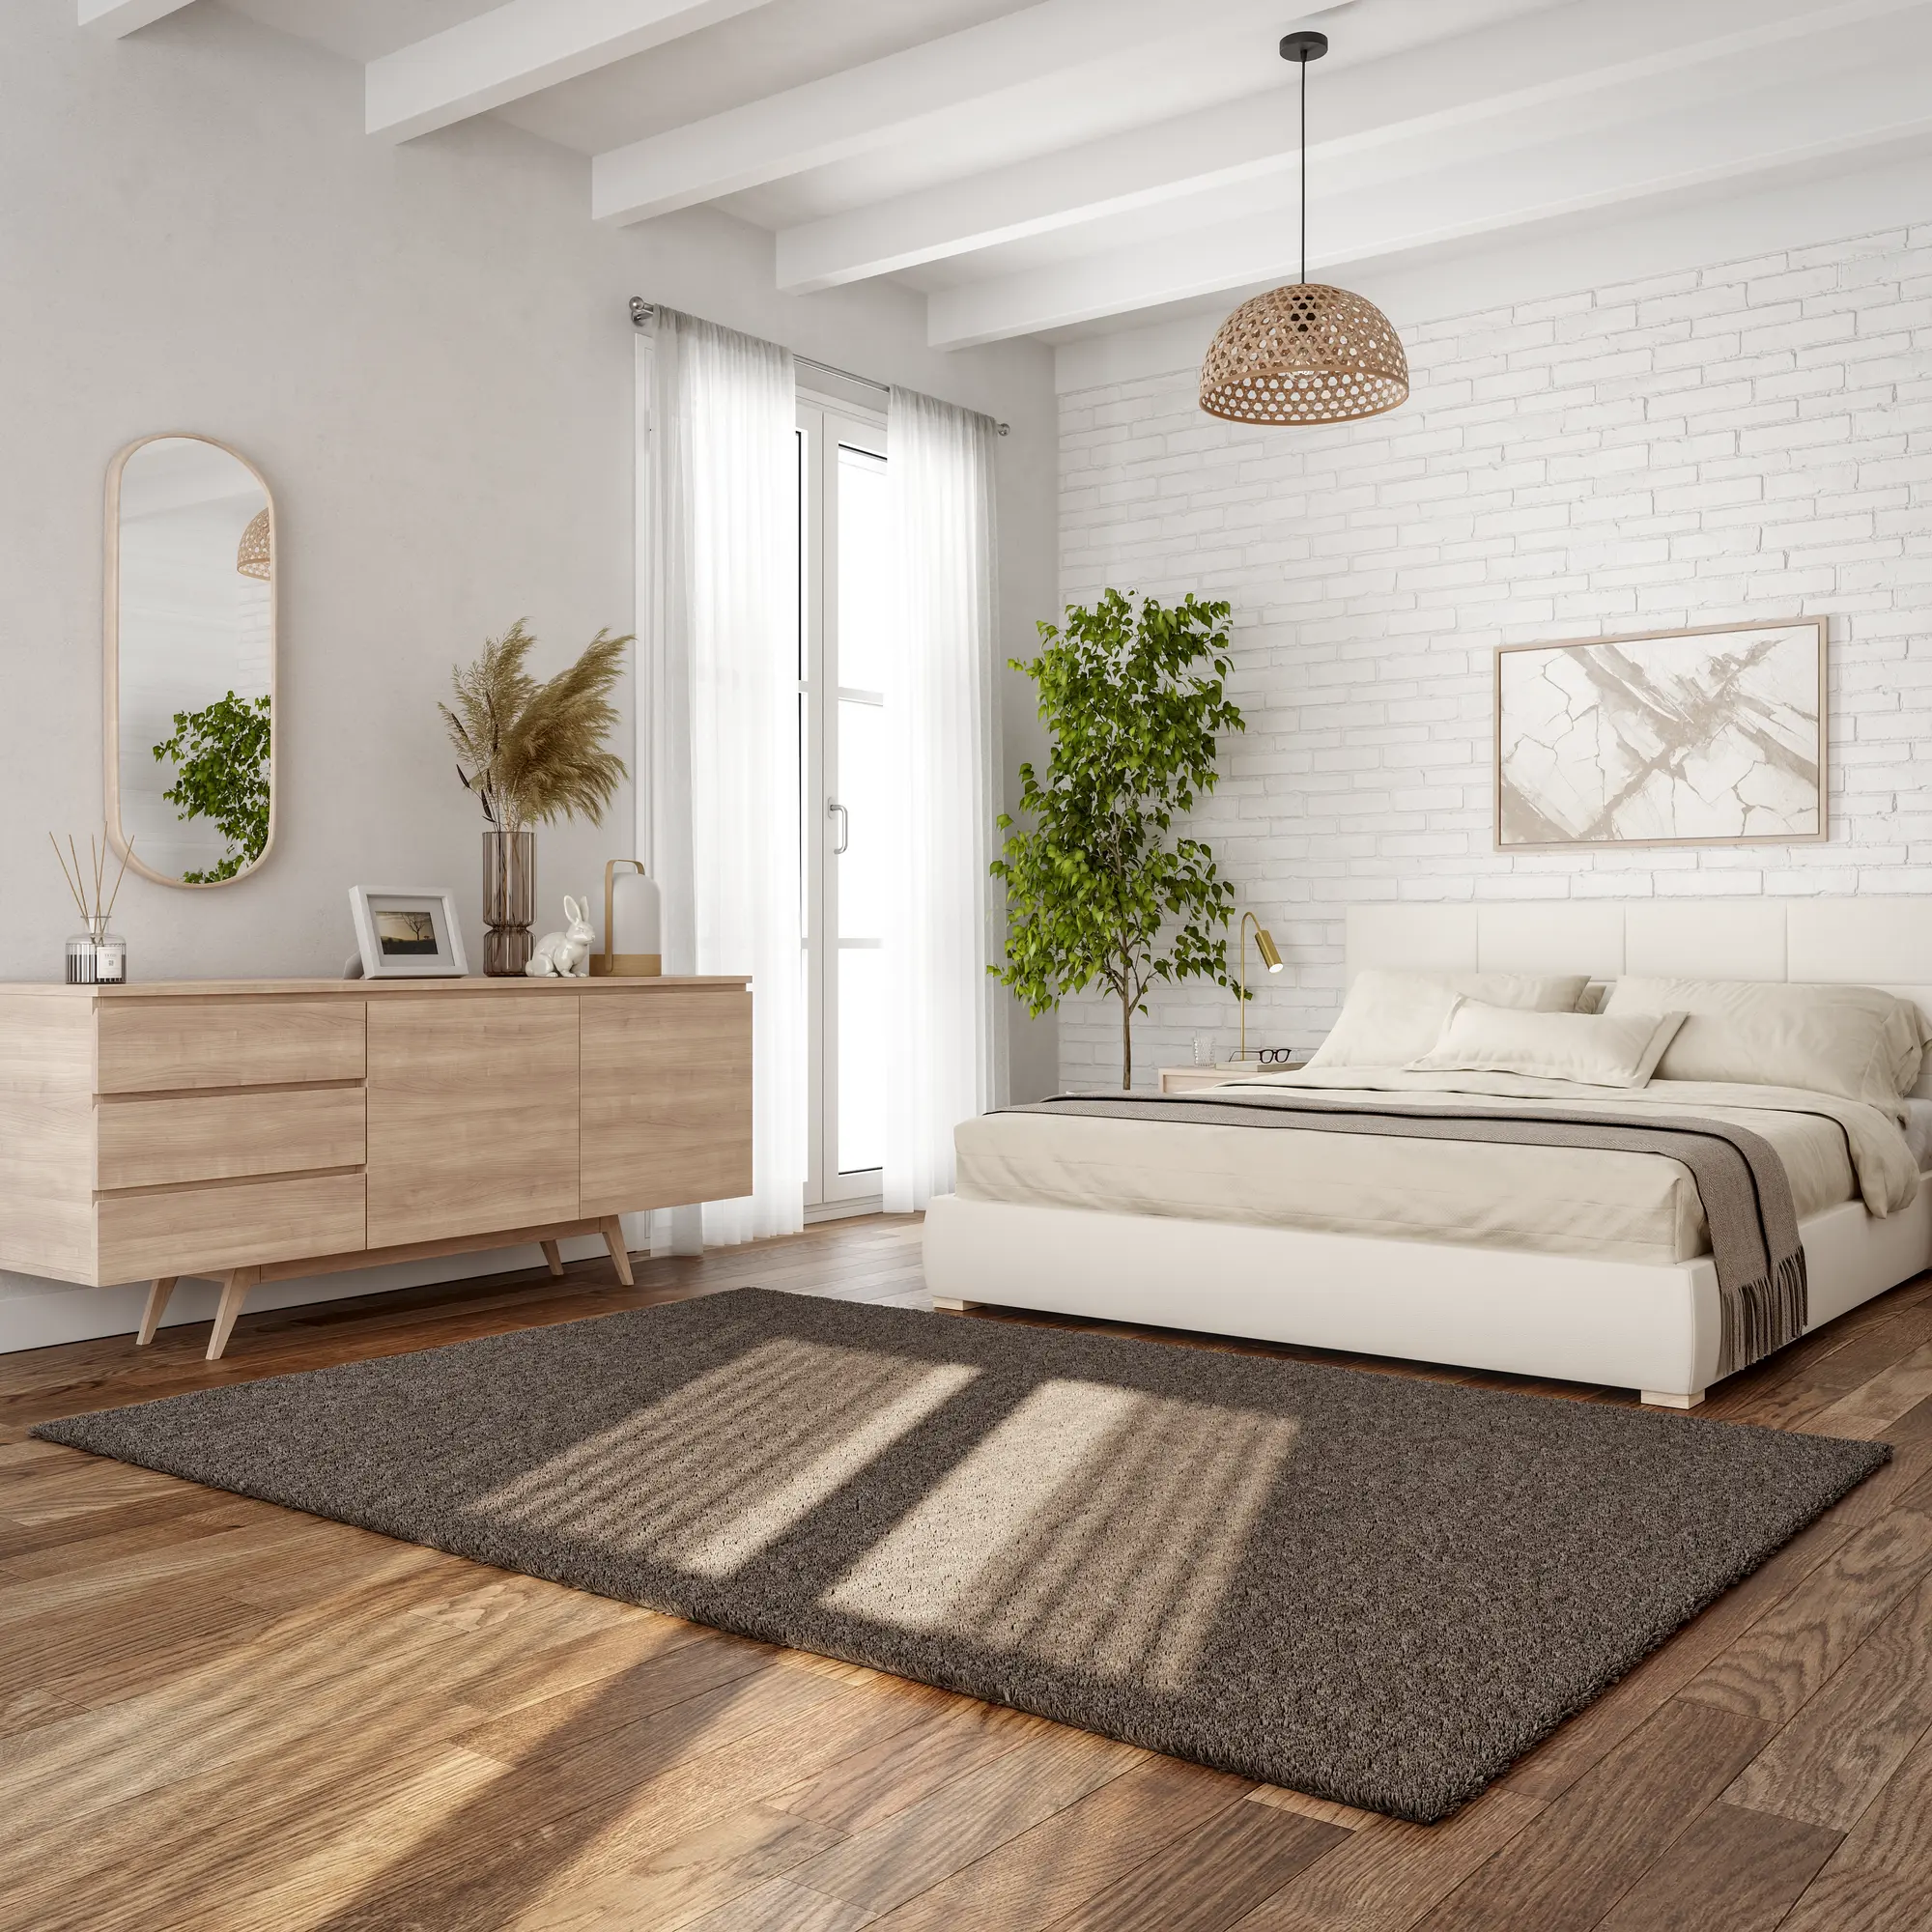 Esta alfombra de cama de Leroy Merlin arrasa en ventas y es puro confort  para un dormitorio más gustoso y calentito